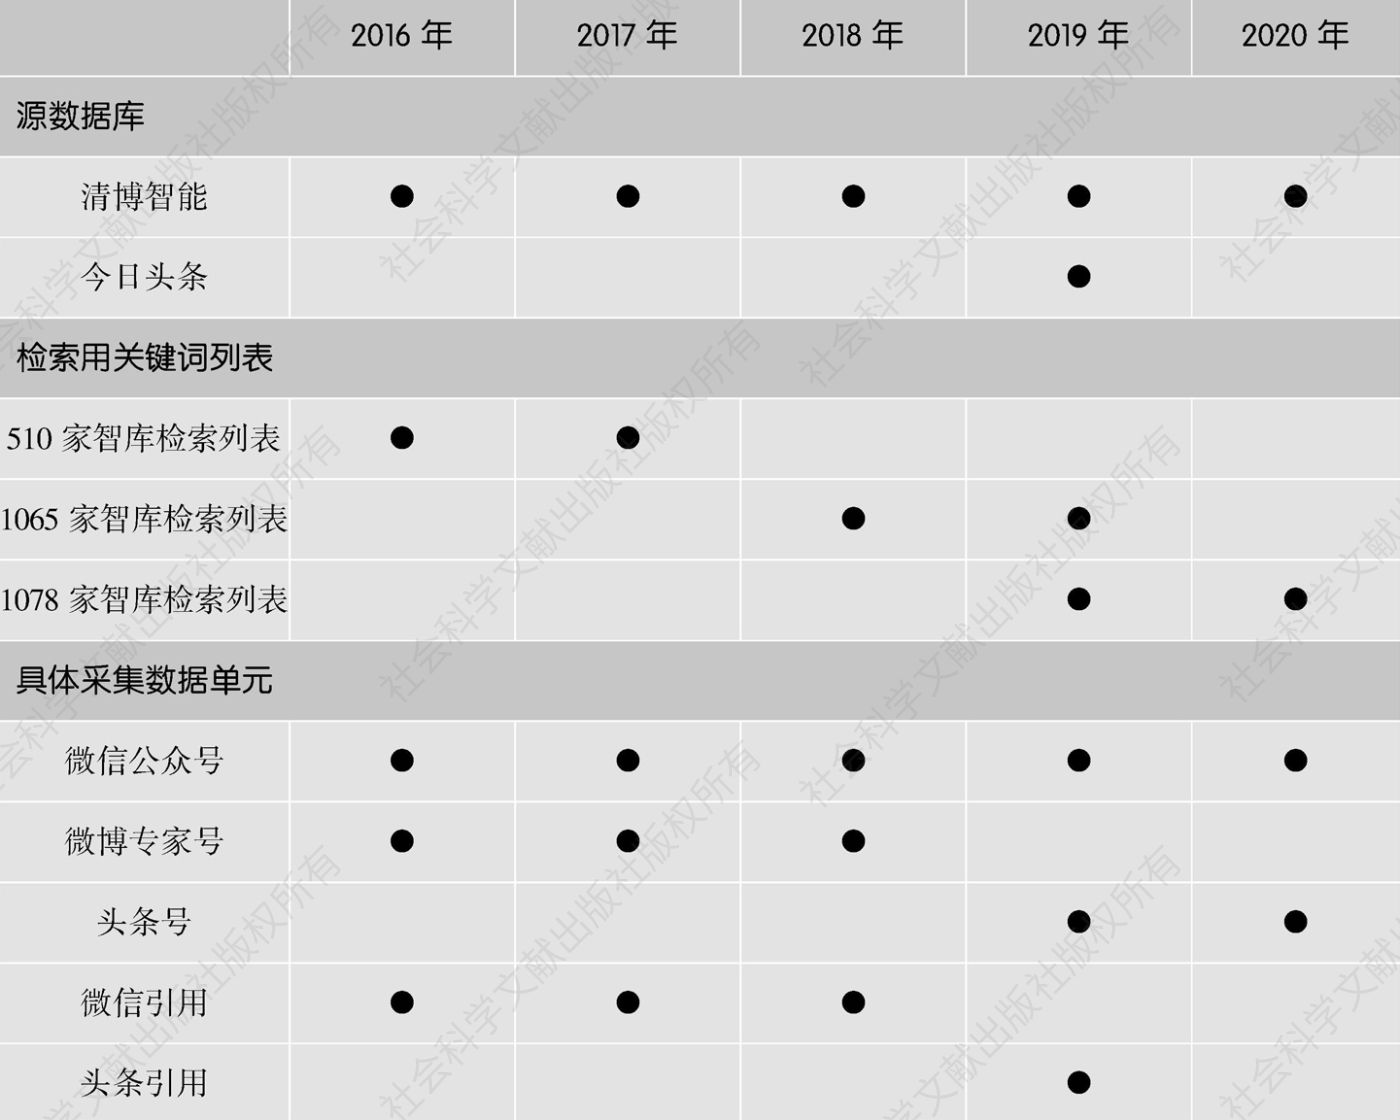 表2.1 2016～2020年中国智库数据采集情况